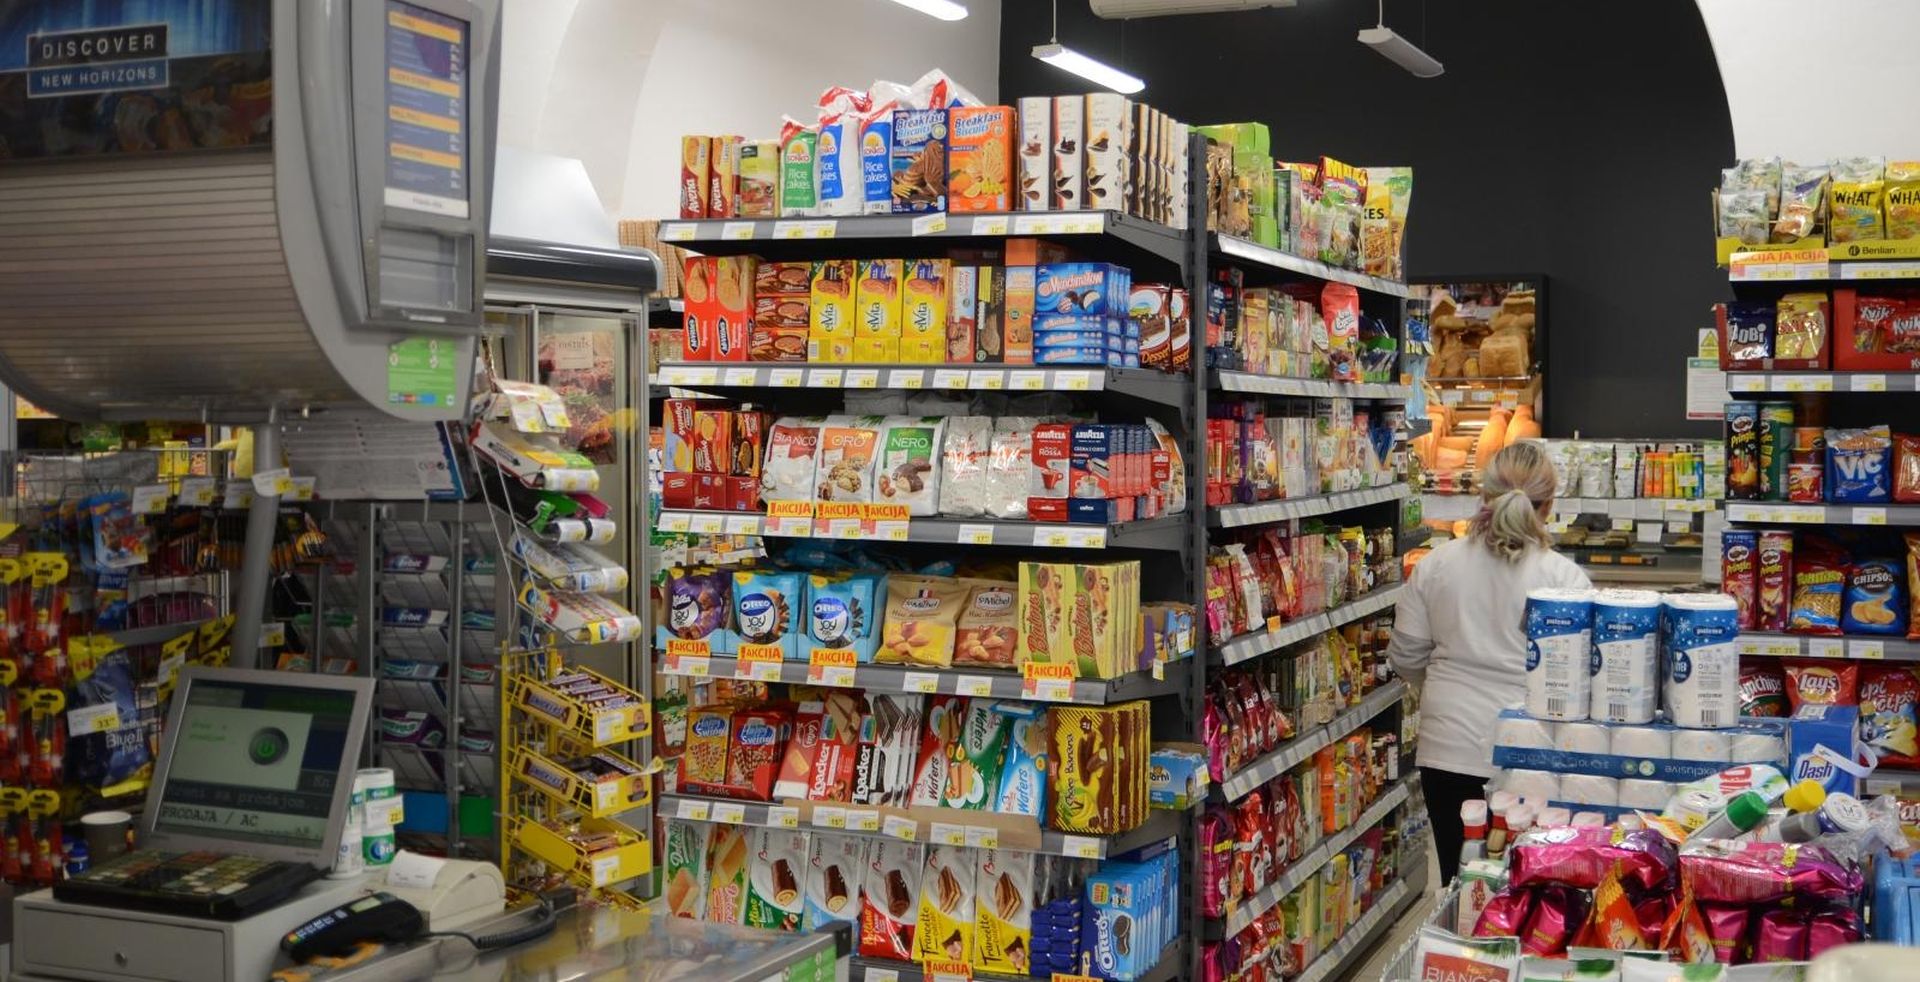 Prodavaonice "Istarski supermarketi" u Puli 15.03.2019., Pula -  Prodavaonice "Istarski supermarketi" u centru Pule.
Photo: Dusko Marusic /PIXSELL